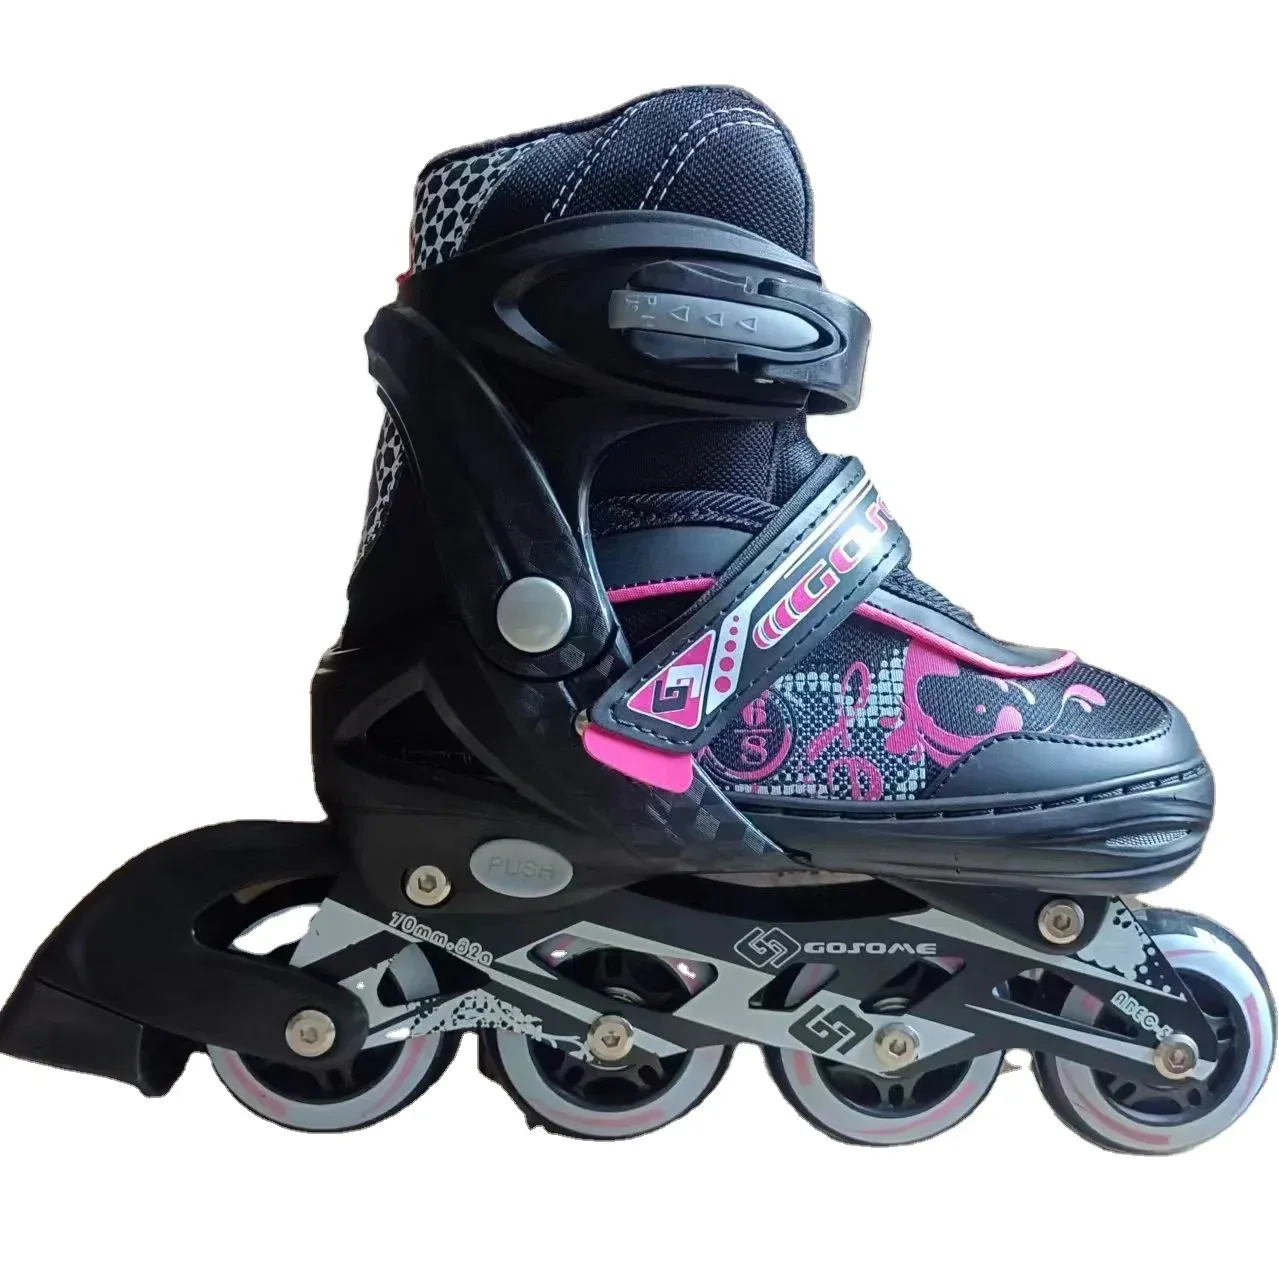 GOSOME 2 가벼운 깜박이는 PU 바퀴 롤러 인라인 스케이트 신발 어린이를위한 베스트 셀러 뜨거운 판매 조정 가능한 4 인라인 스케이트